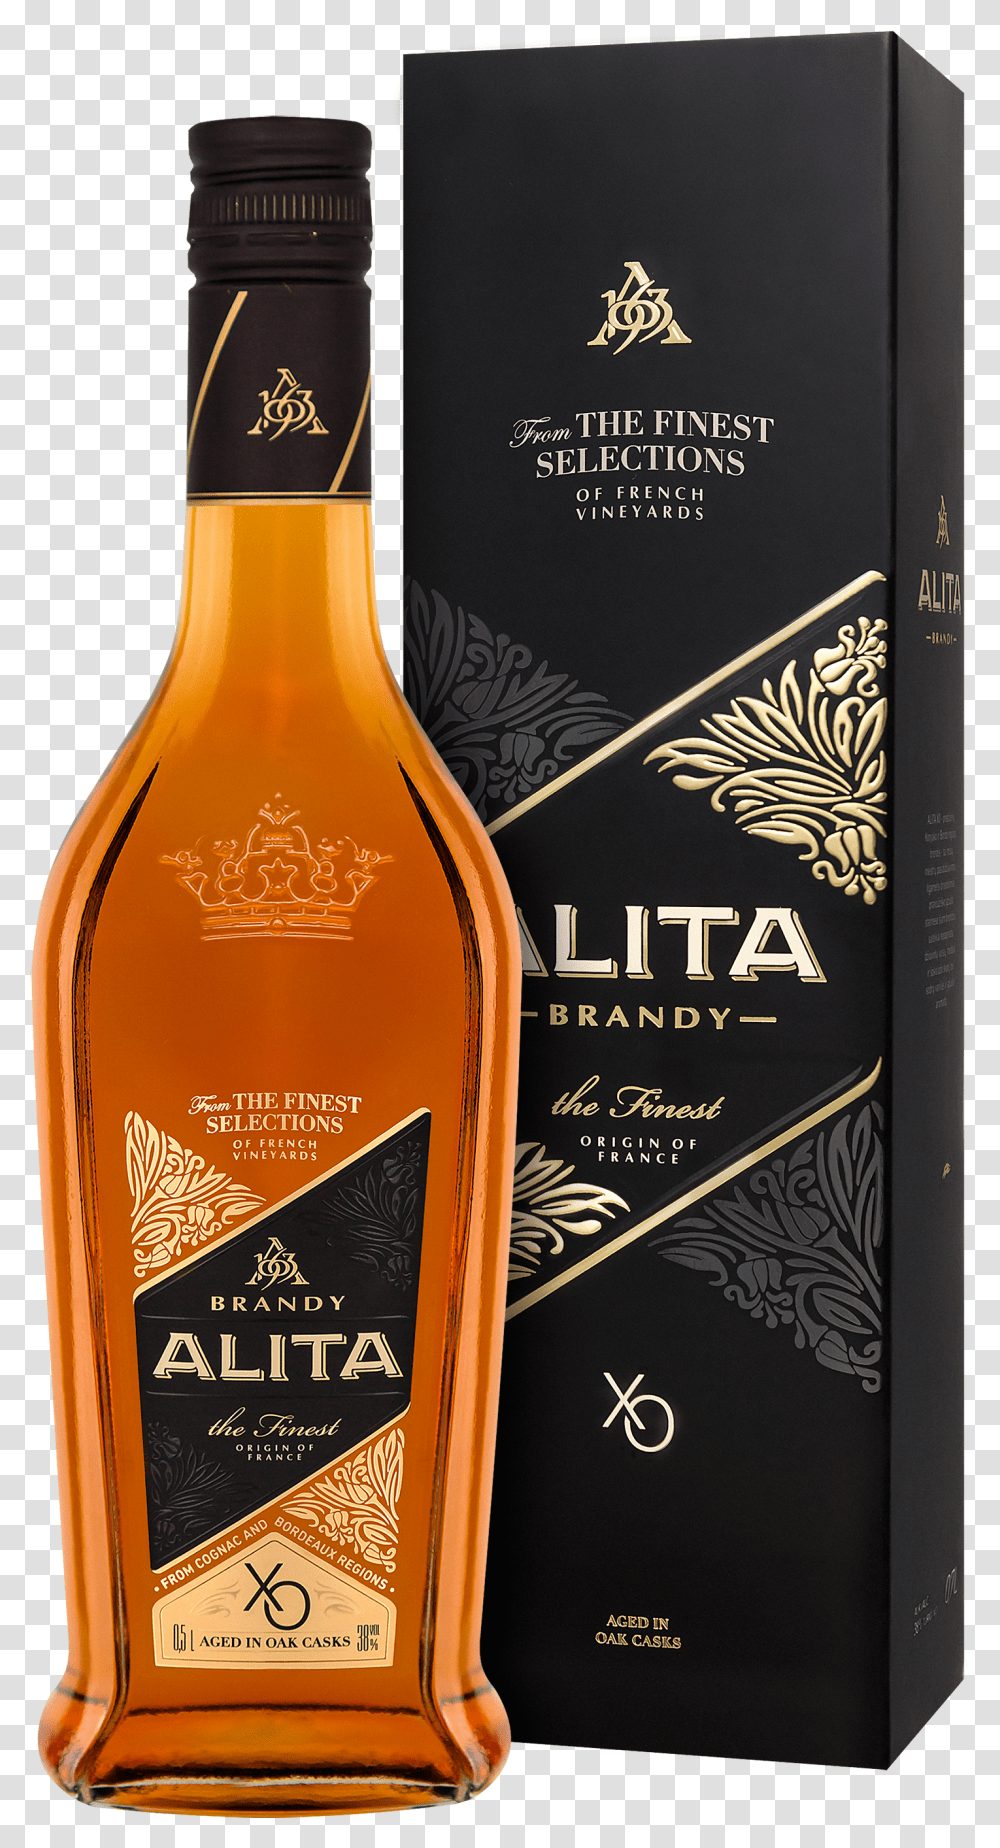 Gift Box Design For Alita Xo Brandy Vodka Bottle Whiskey Transparent Png